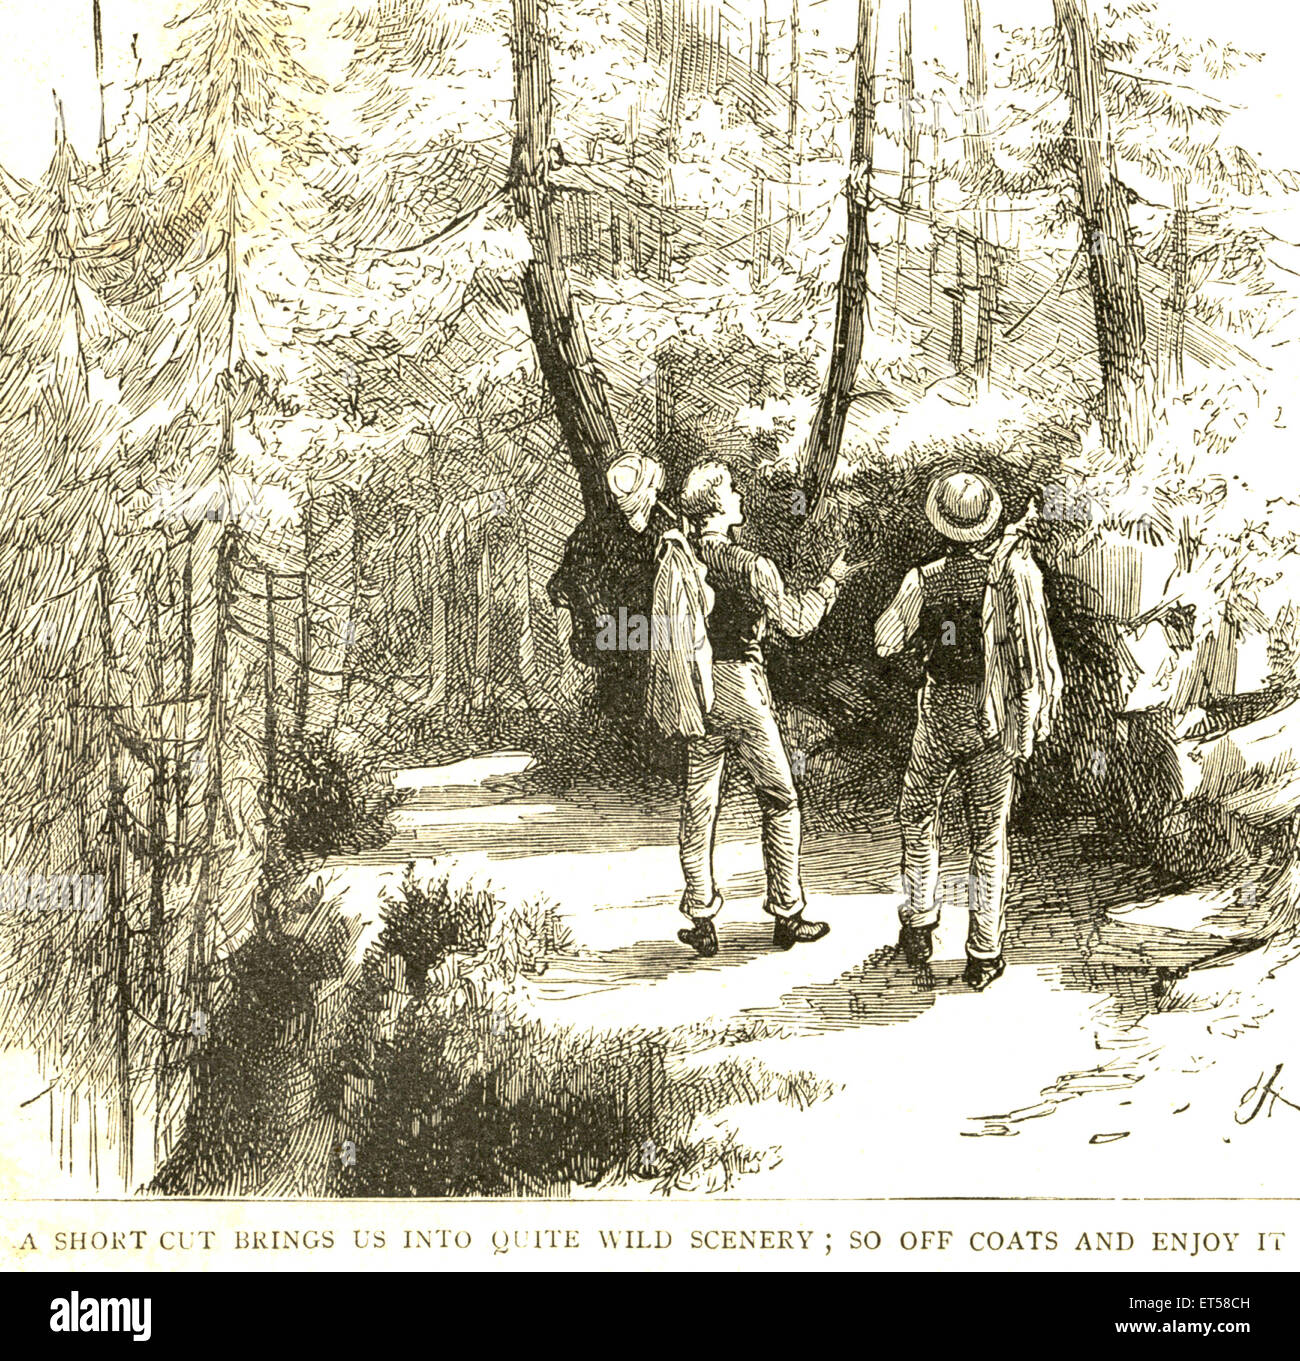 Ein kurzer Schnitt bringt uns in ganz wilde Landschaft; die Grafik 27. März 1886; Indien Stockfoto